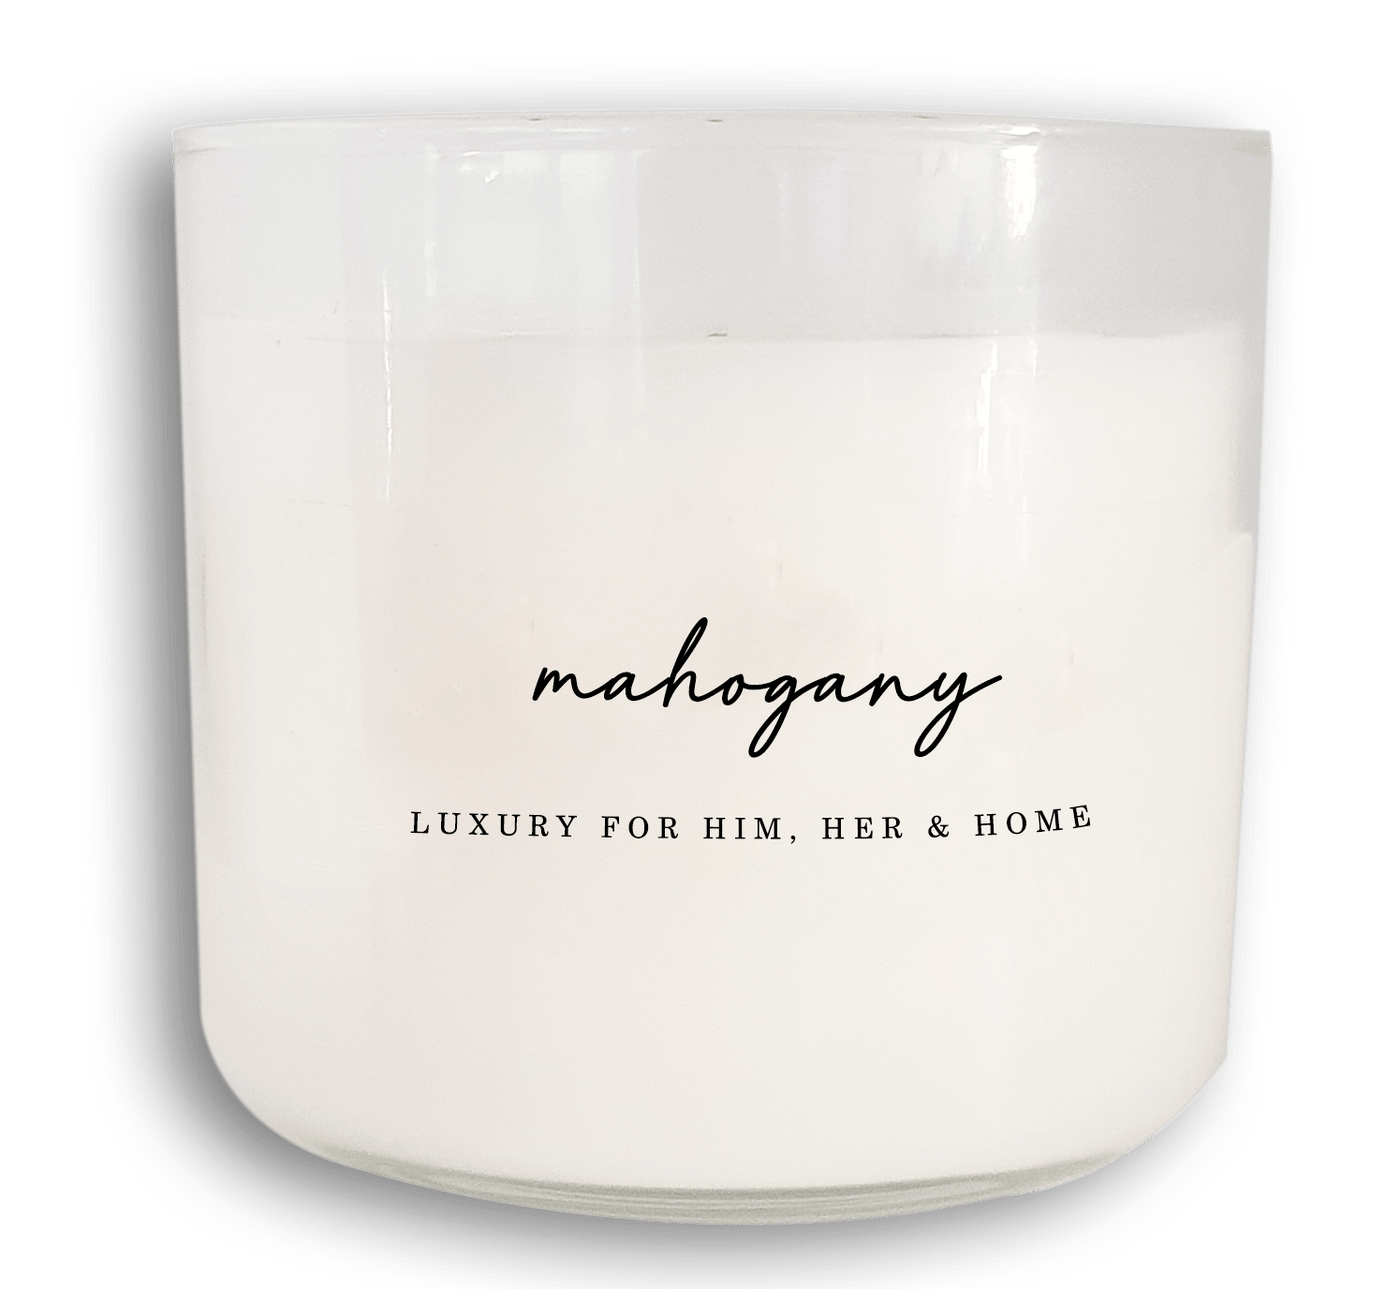 Teakwood & Mahogany Candle – Modern Legend, LLC.